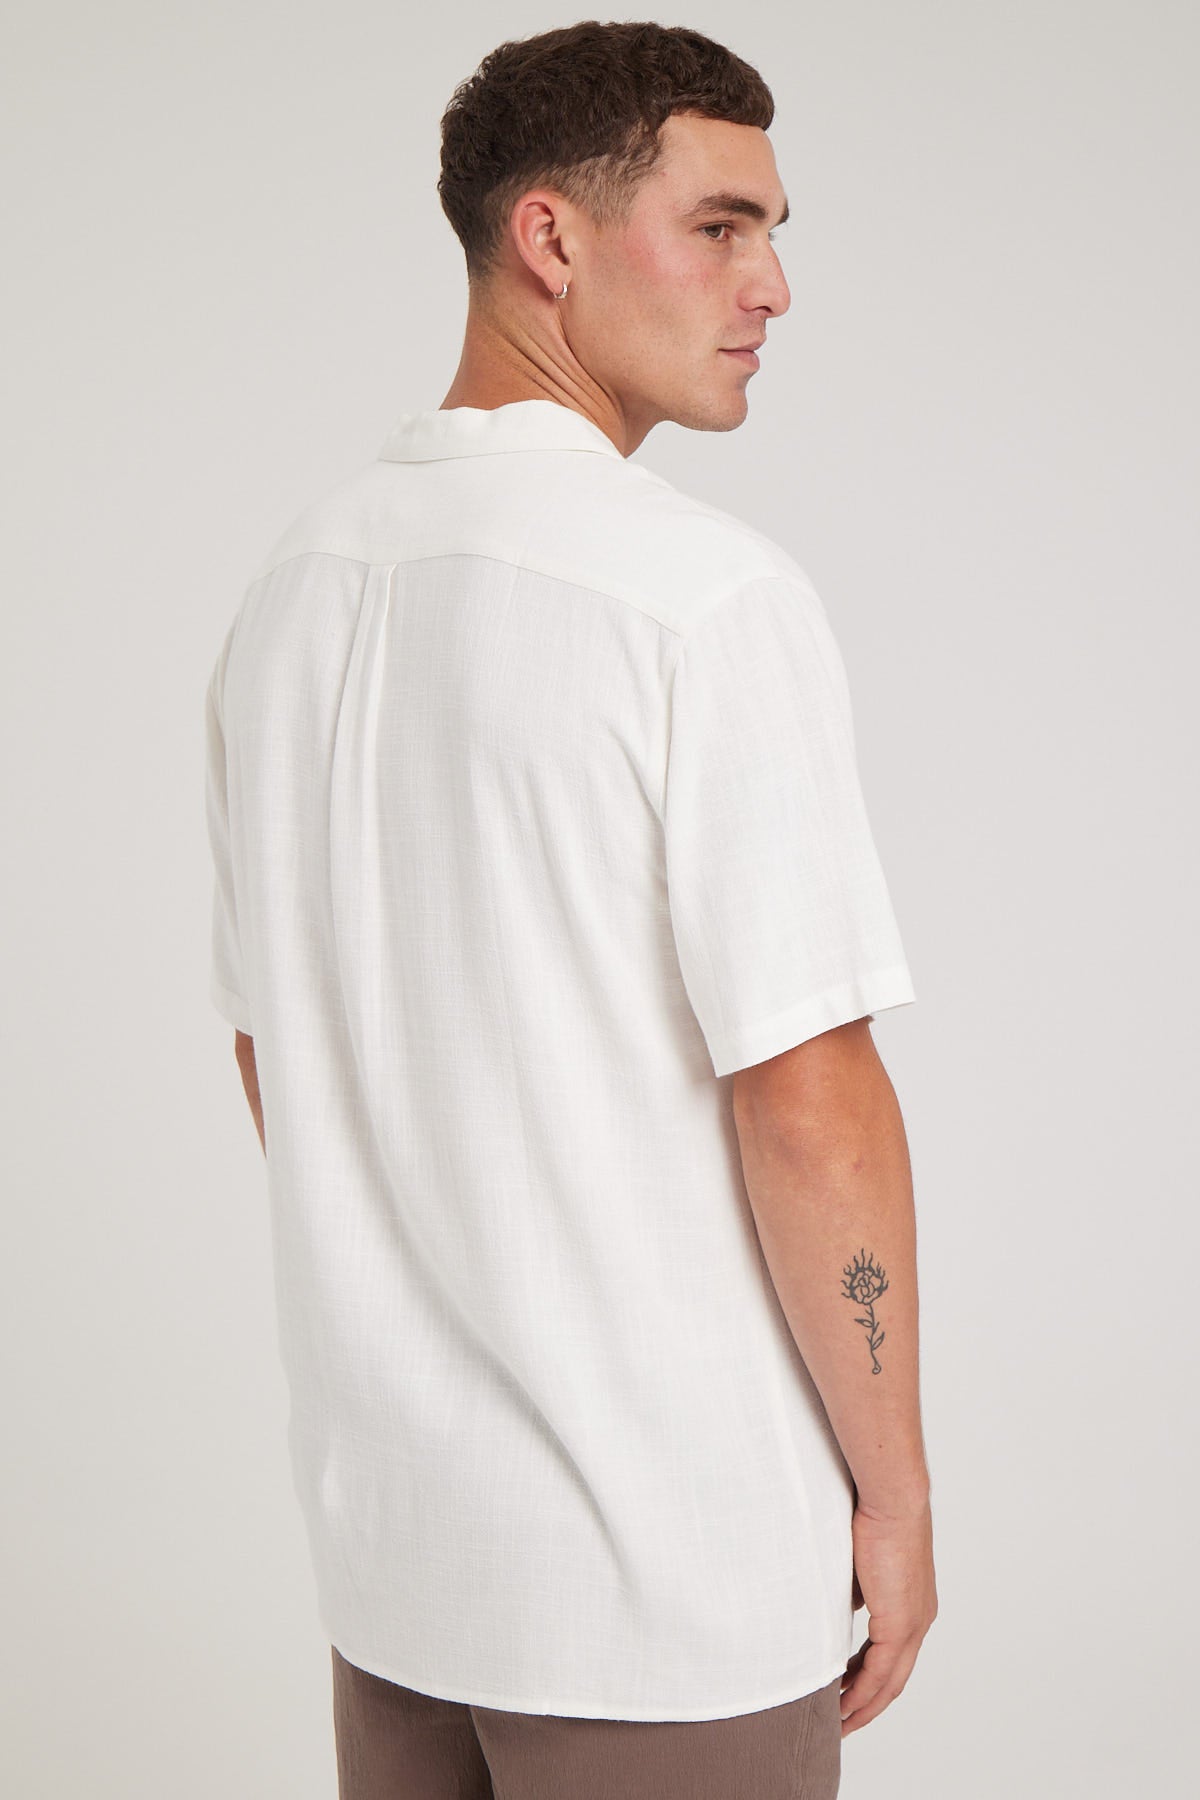 Common Need Truth Resort Shirt White – Universal Store